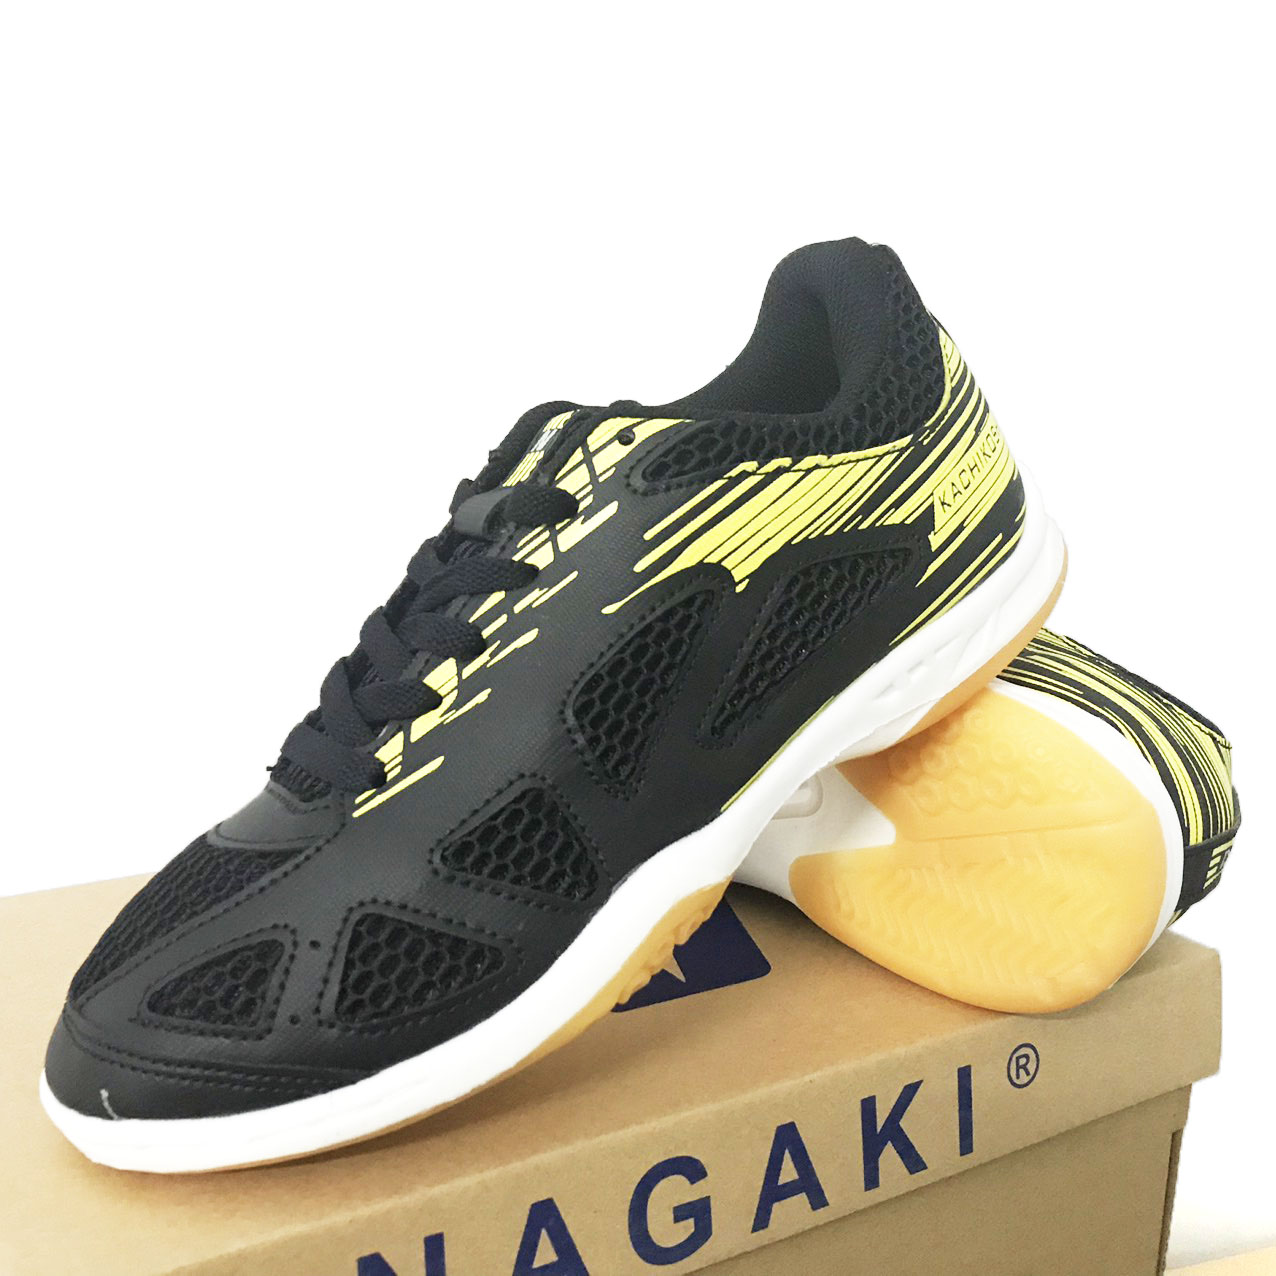 Giày cầu lông chuyên dụng Nagaki